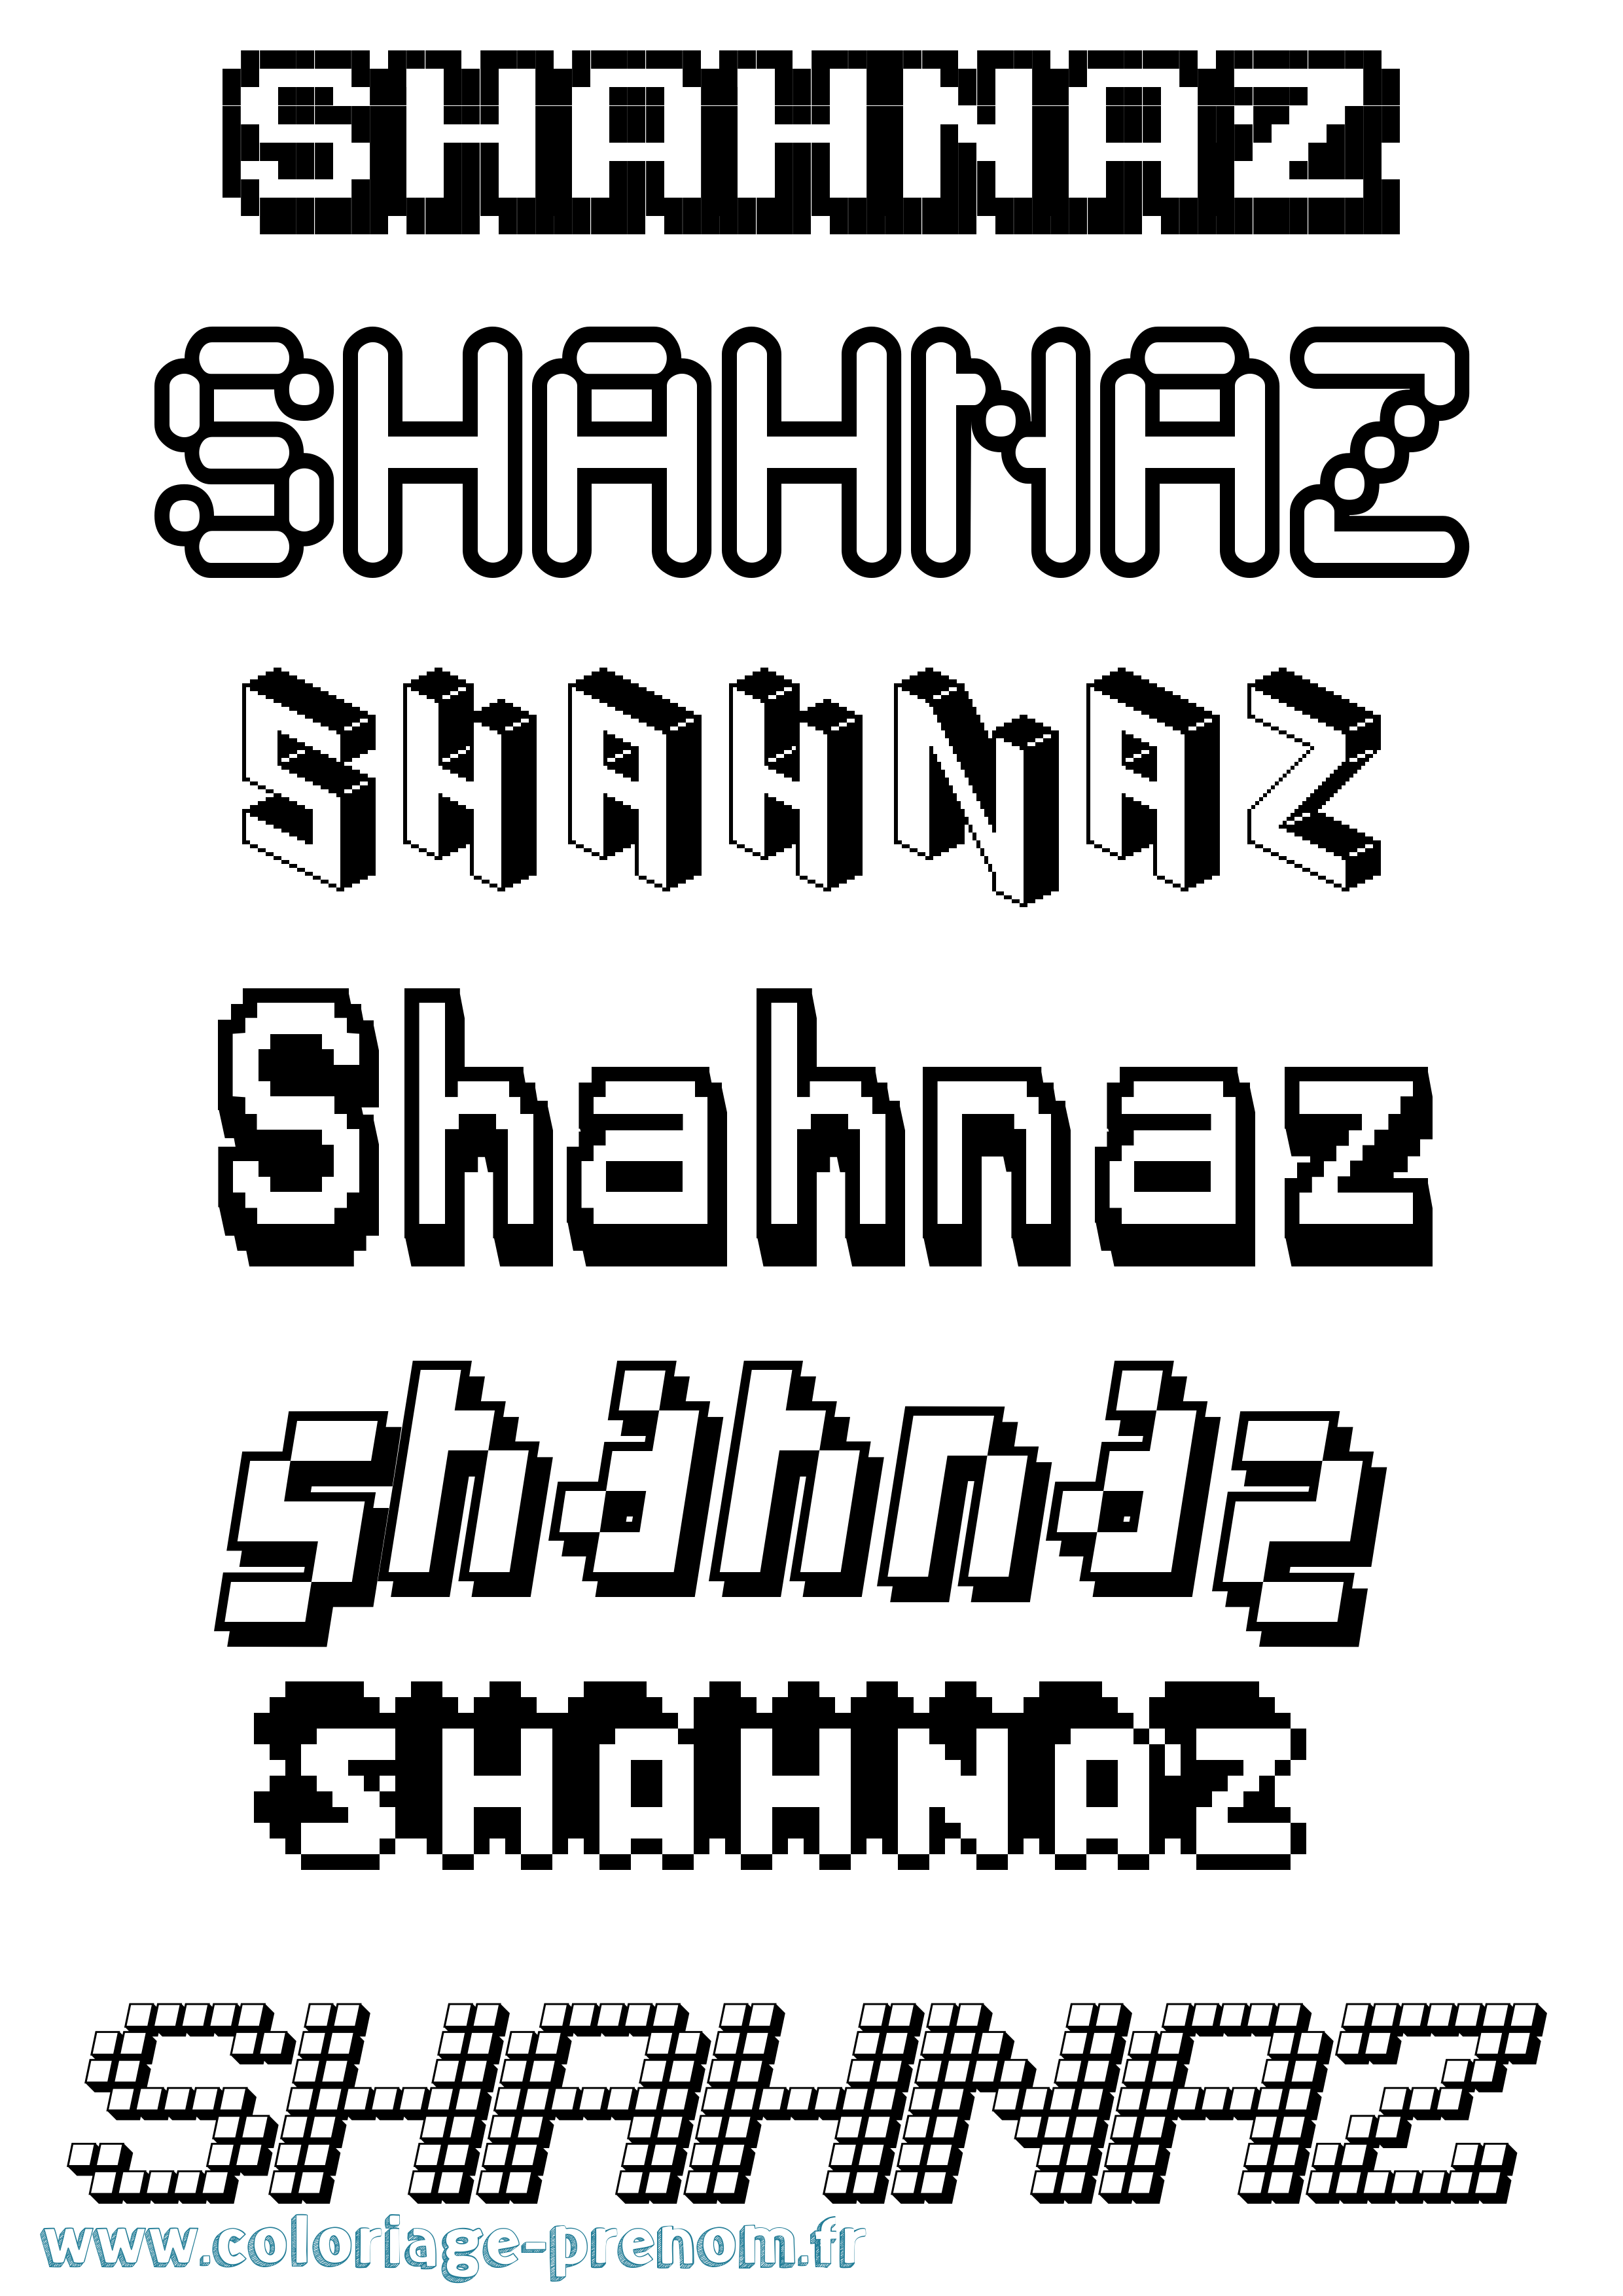 Coloriage prénom Shahnaz Pixel